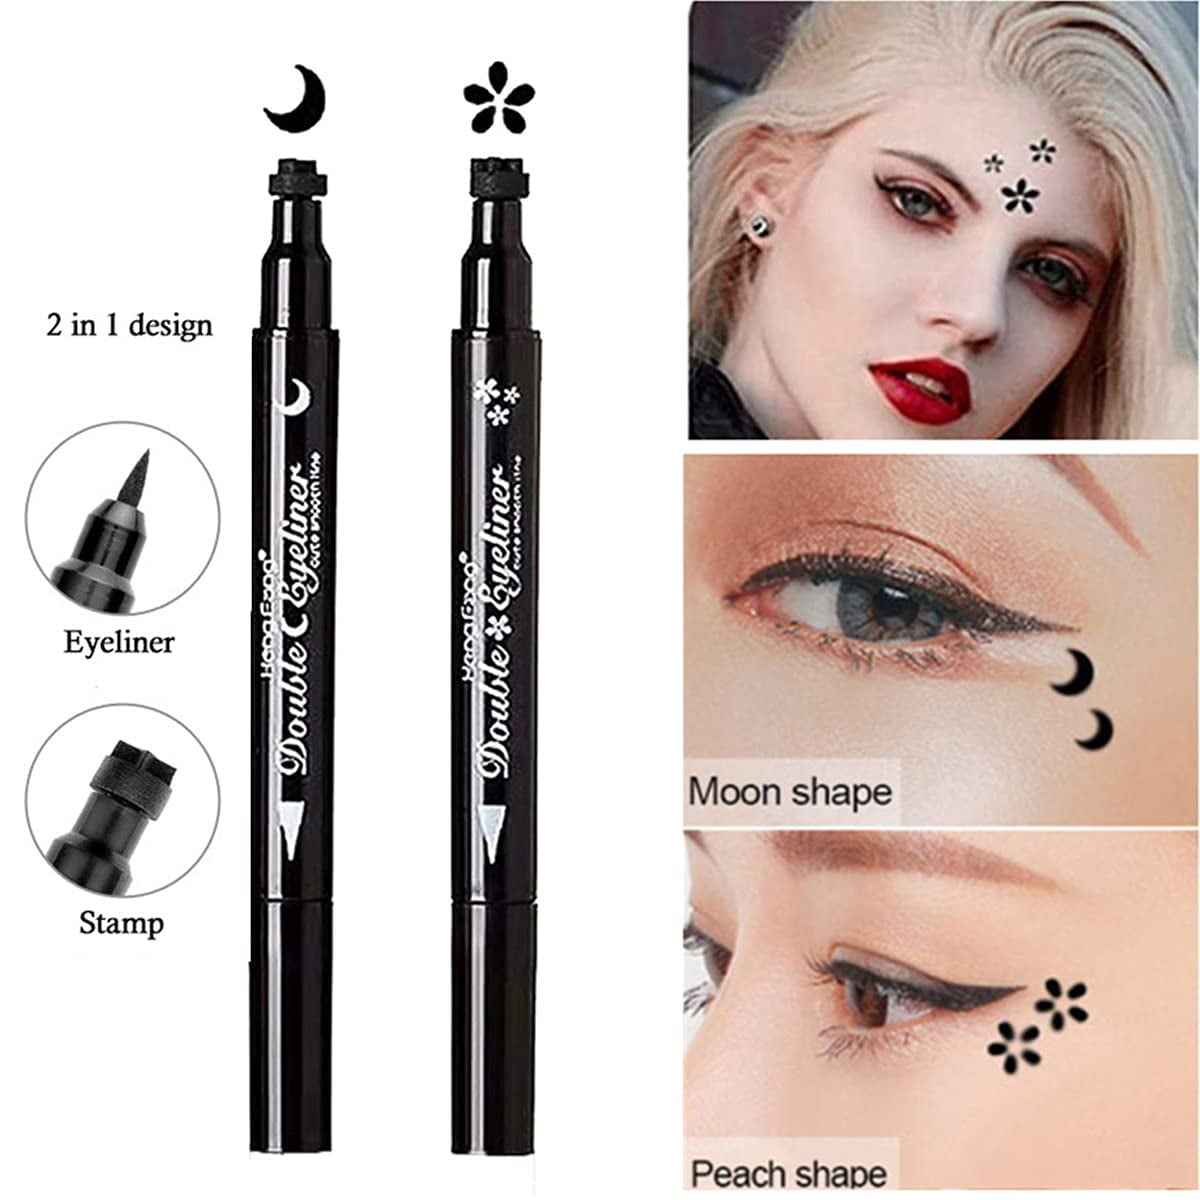 Witchy Liner Heart Stamp Pen – Medusa's Makeup